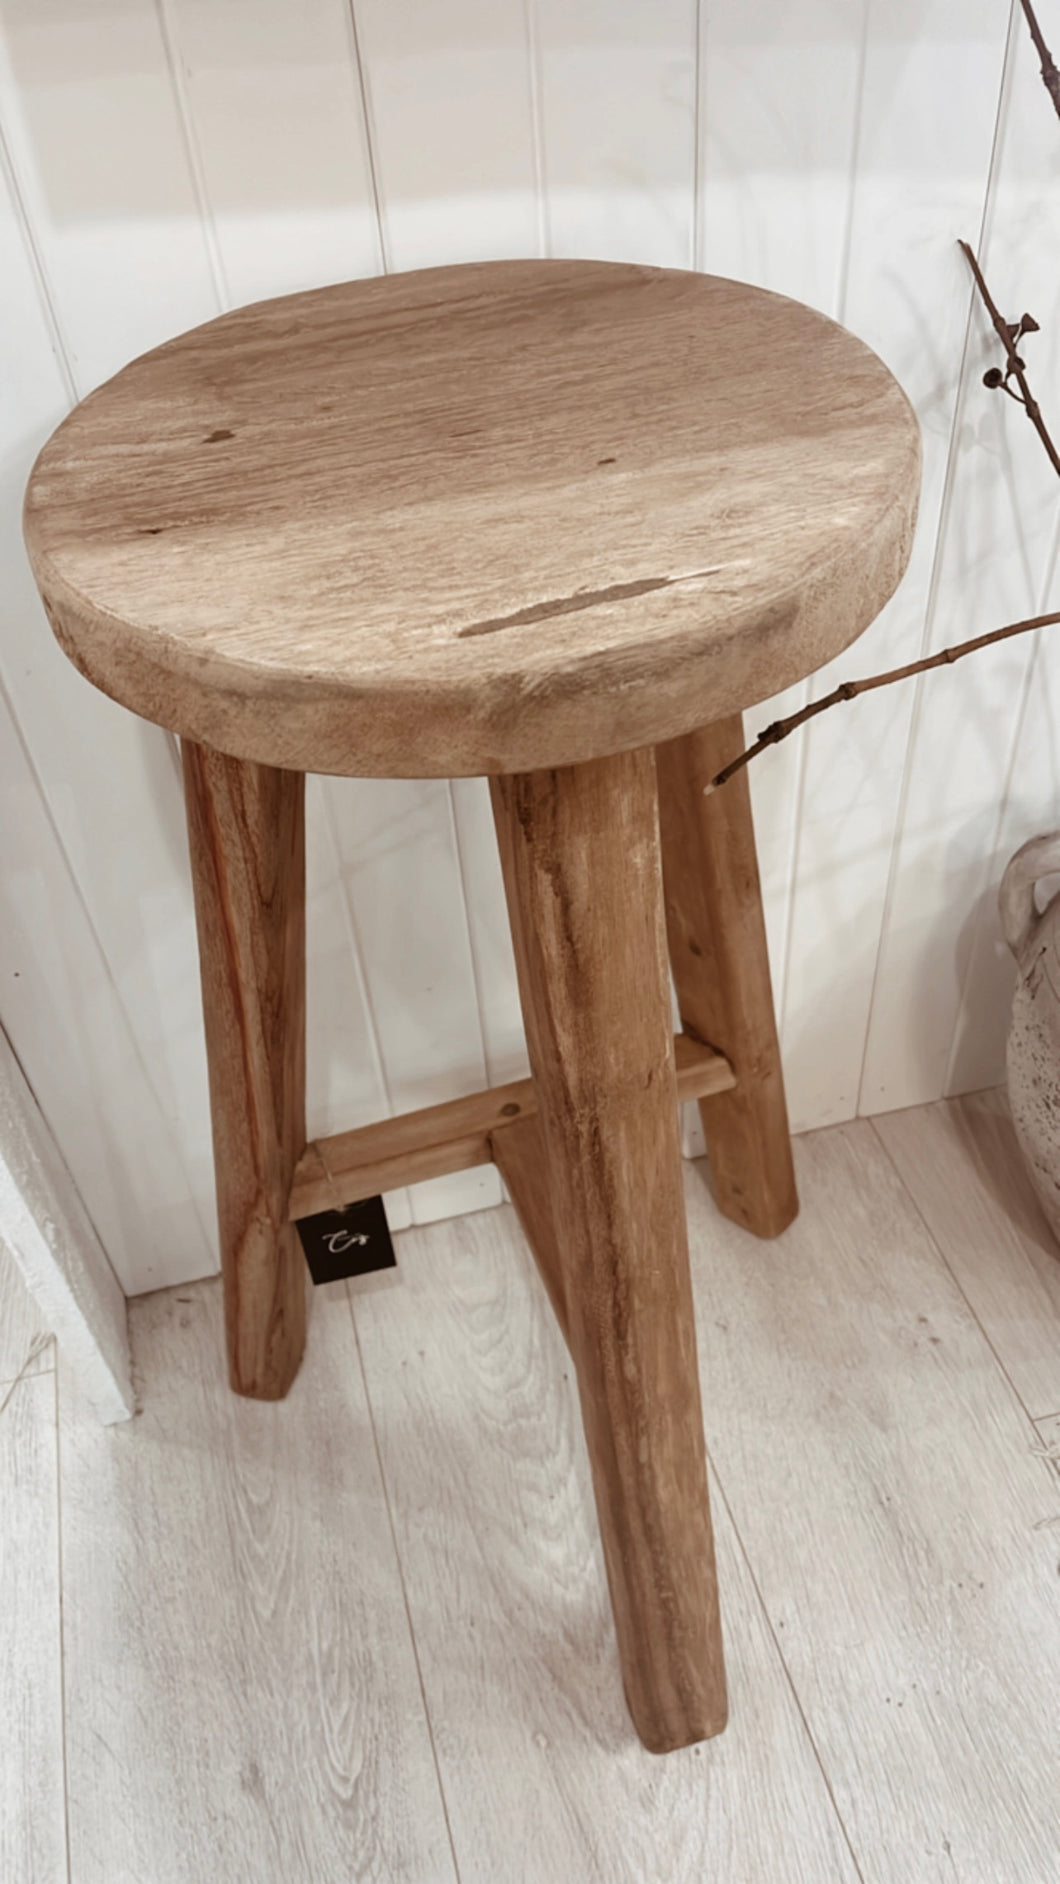 Mia | kitchen vintage Teak stool-Natural